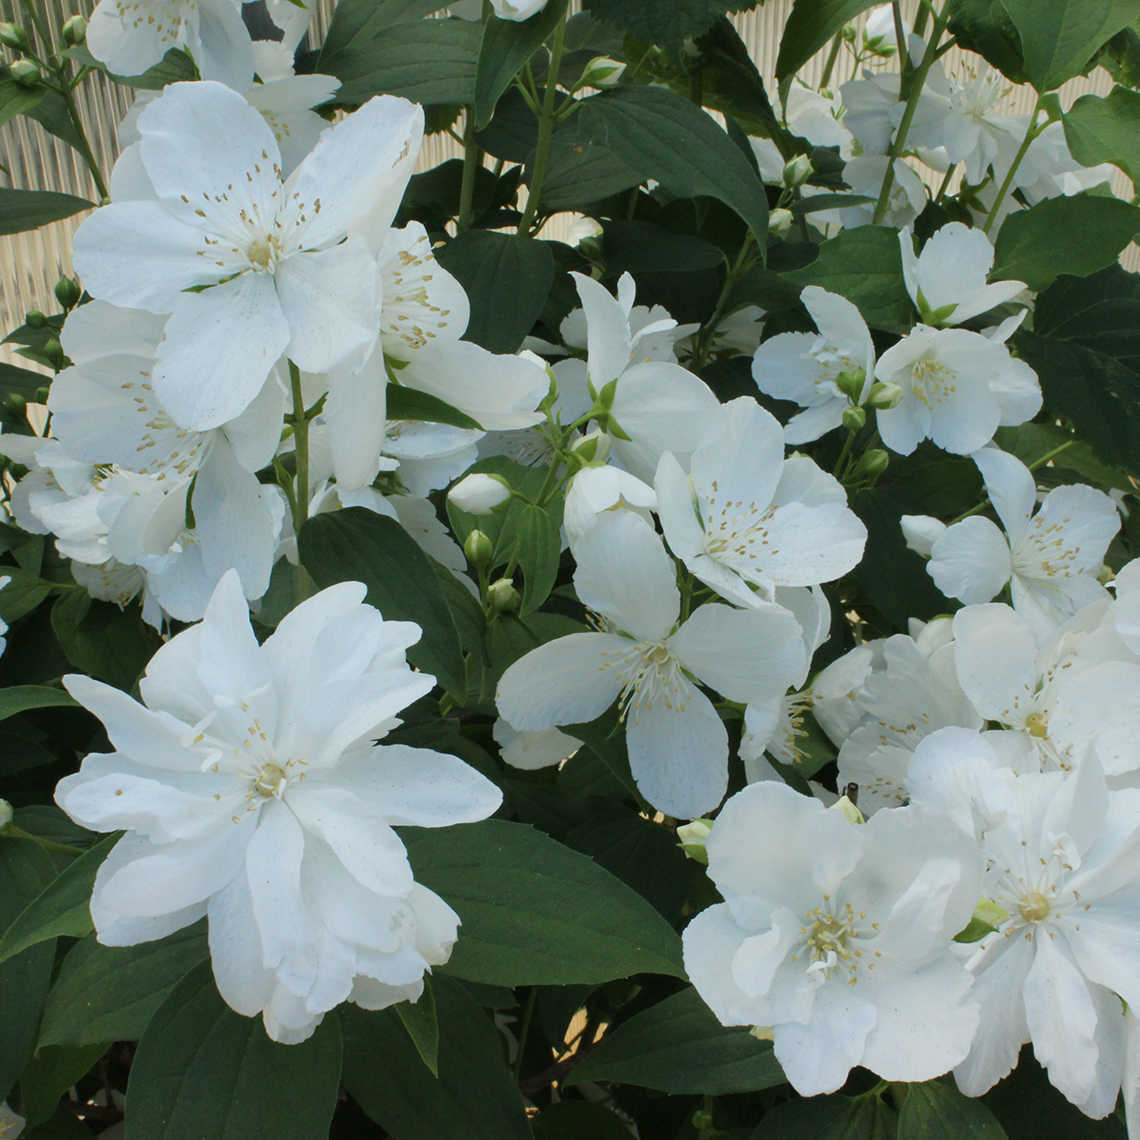 Abundant white blooms of White Rock Philadelphus